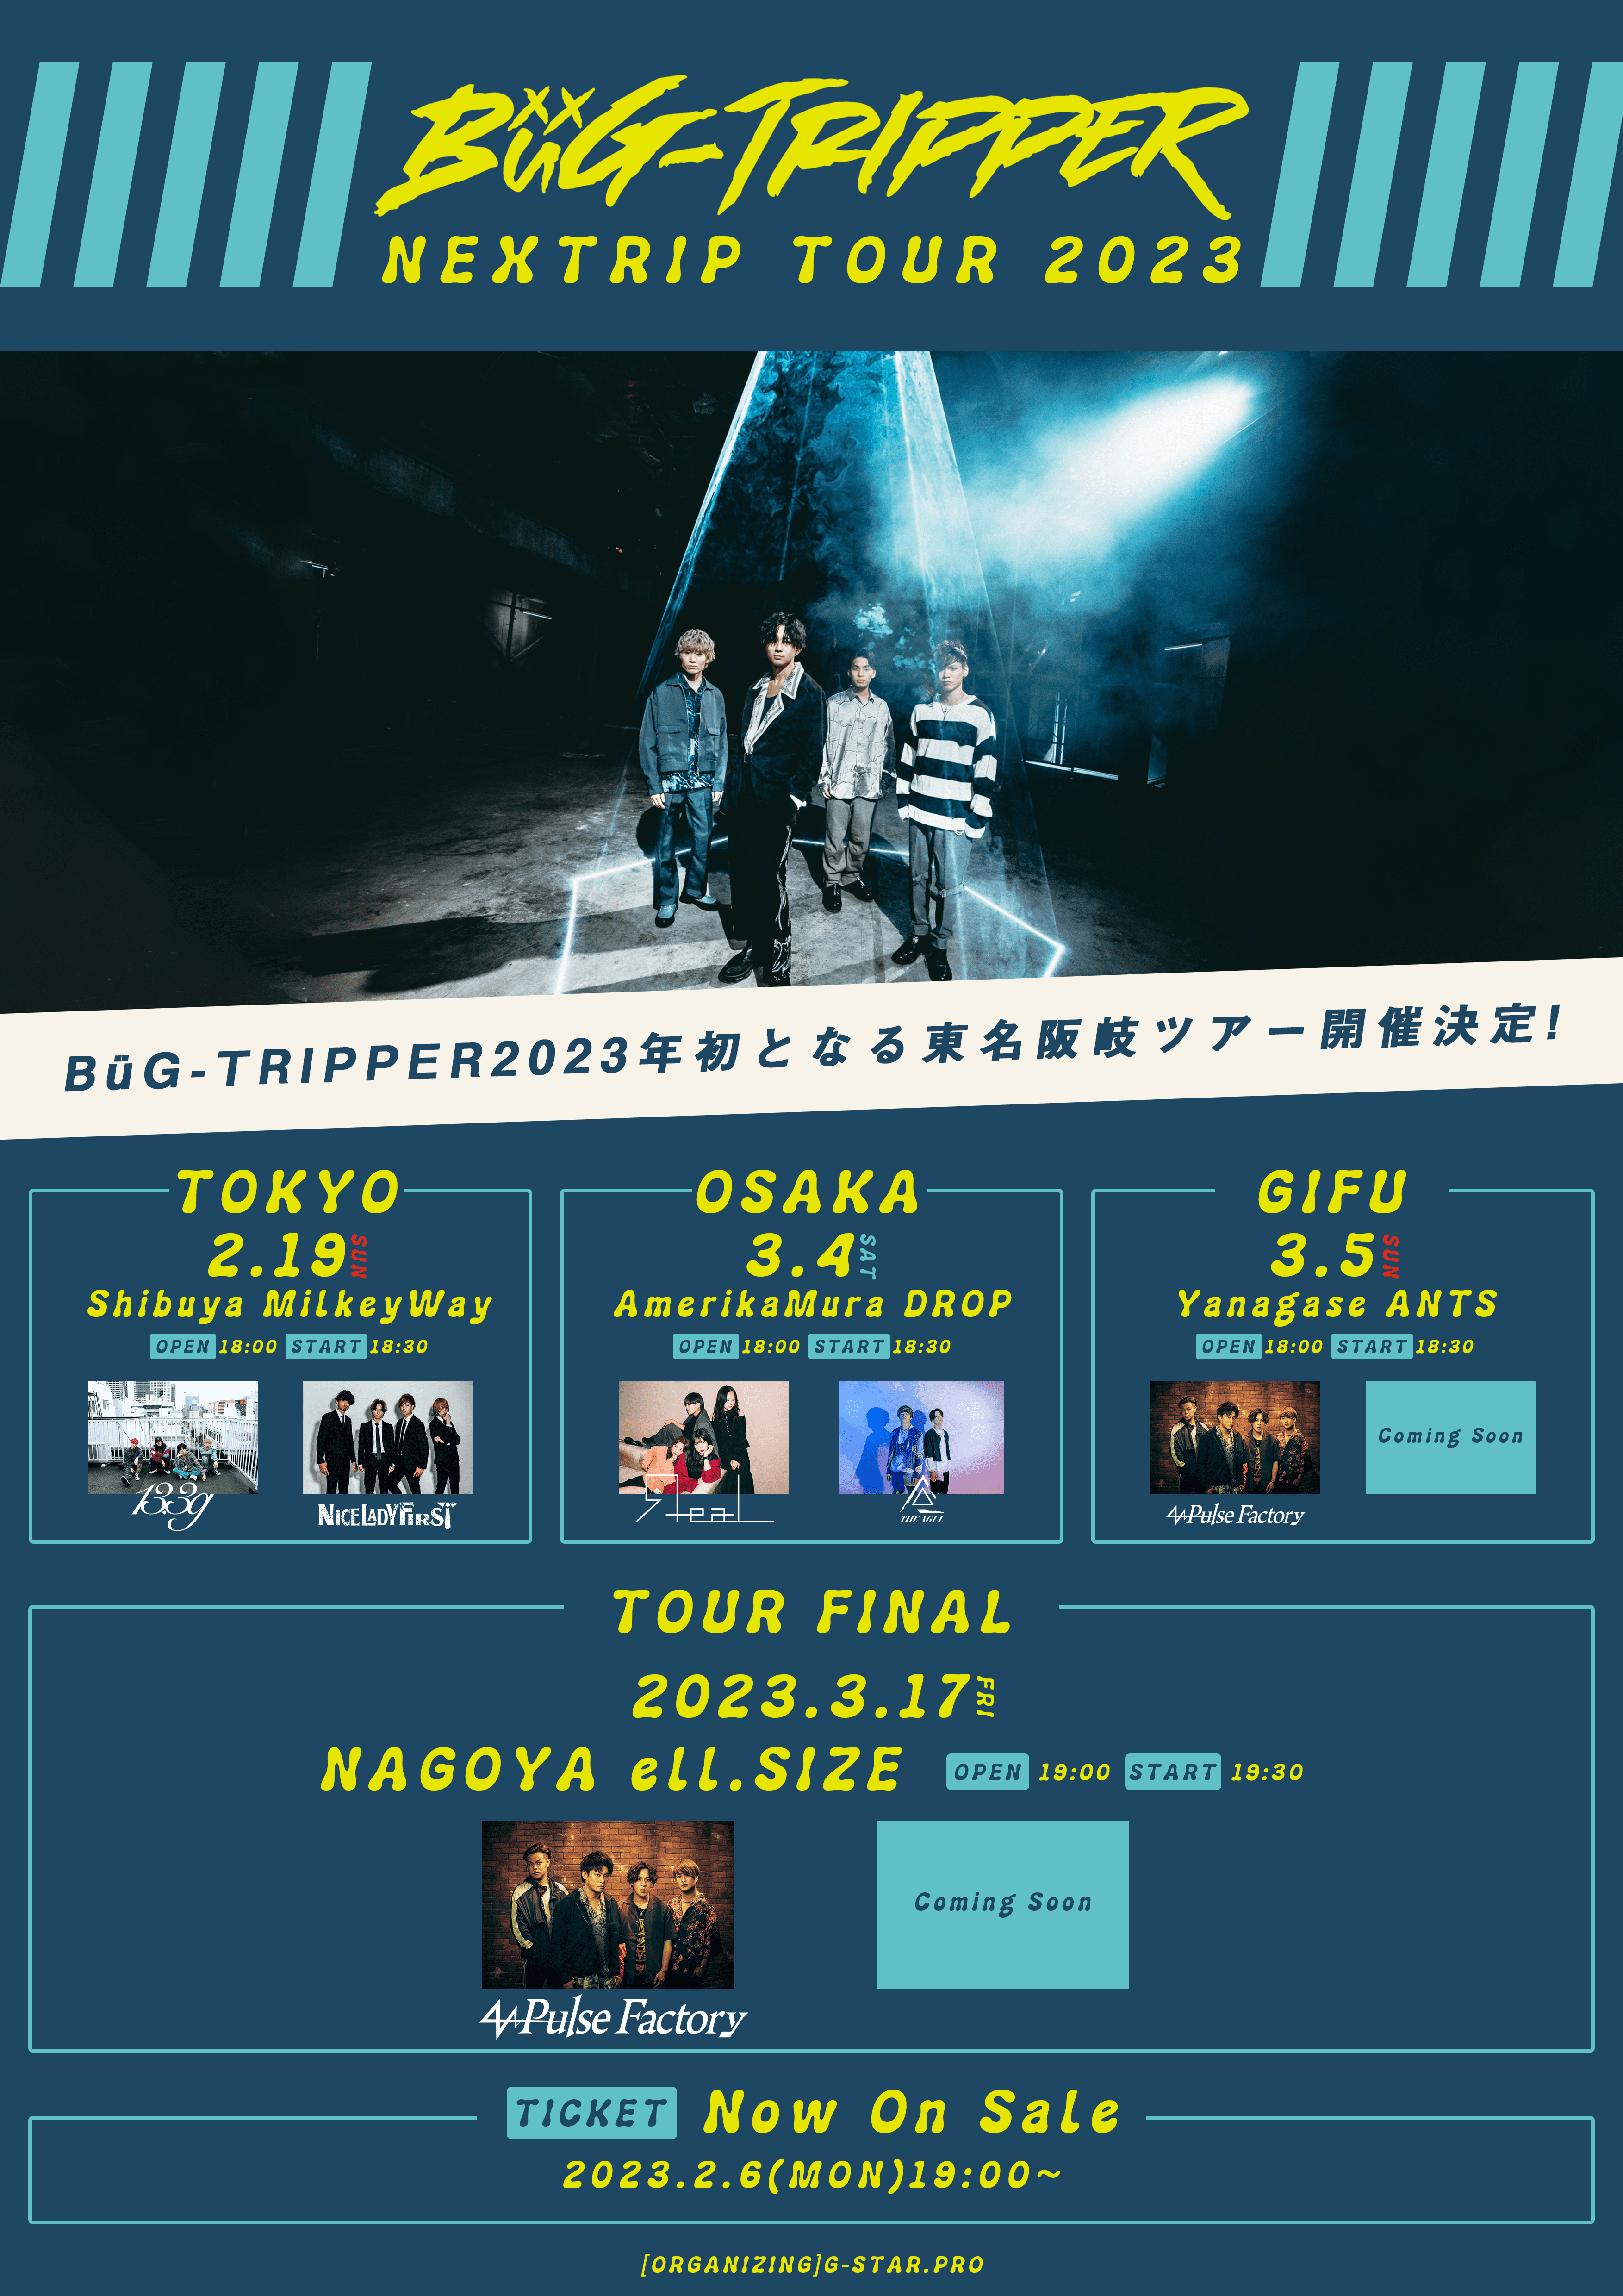 【一般発売】BüG-TRIPPER NEXTRIP TOUR 2023 [岐阜公演]